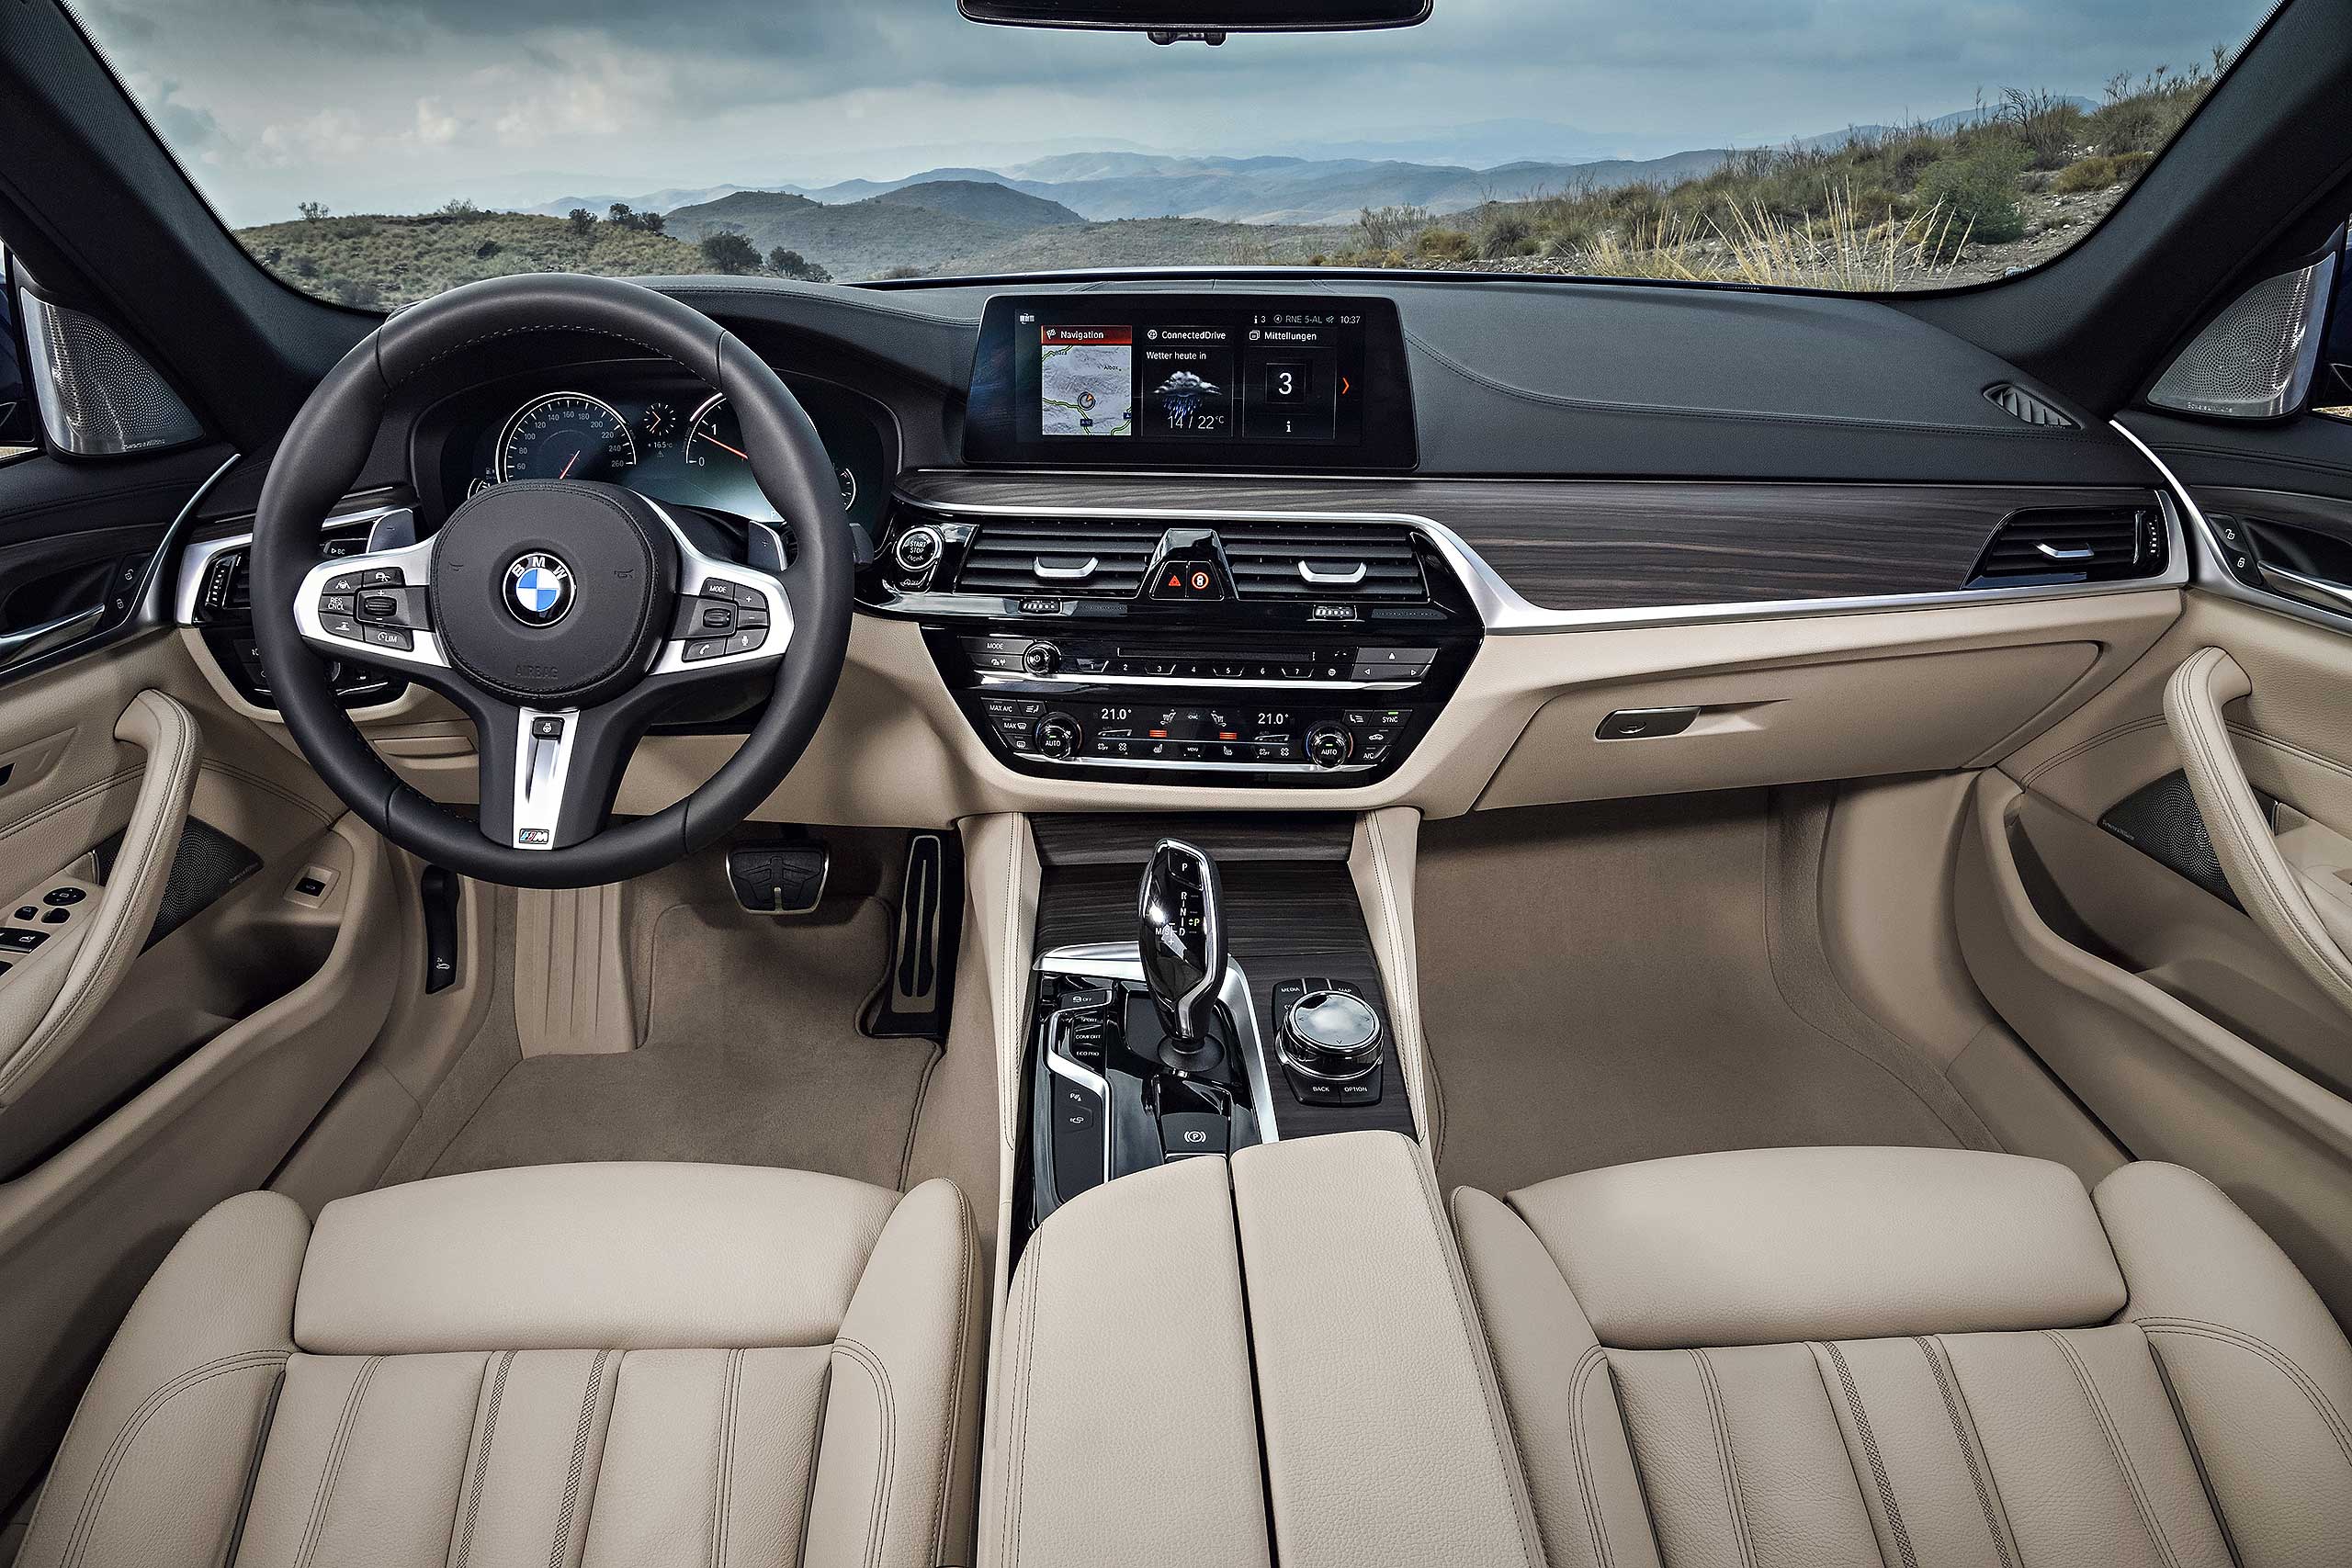 Der neue BMW 5er Touring (G31), Mehr Luxus, weniger Speck